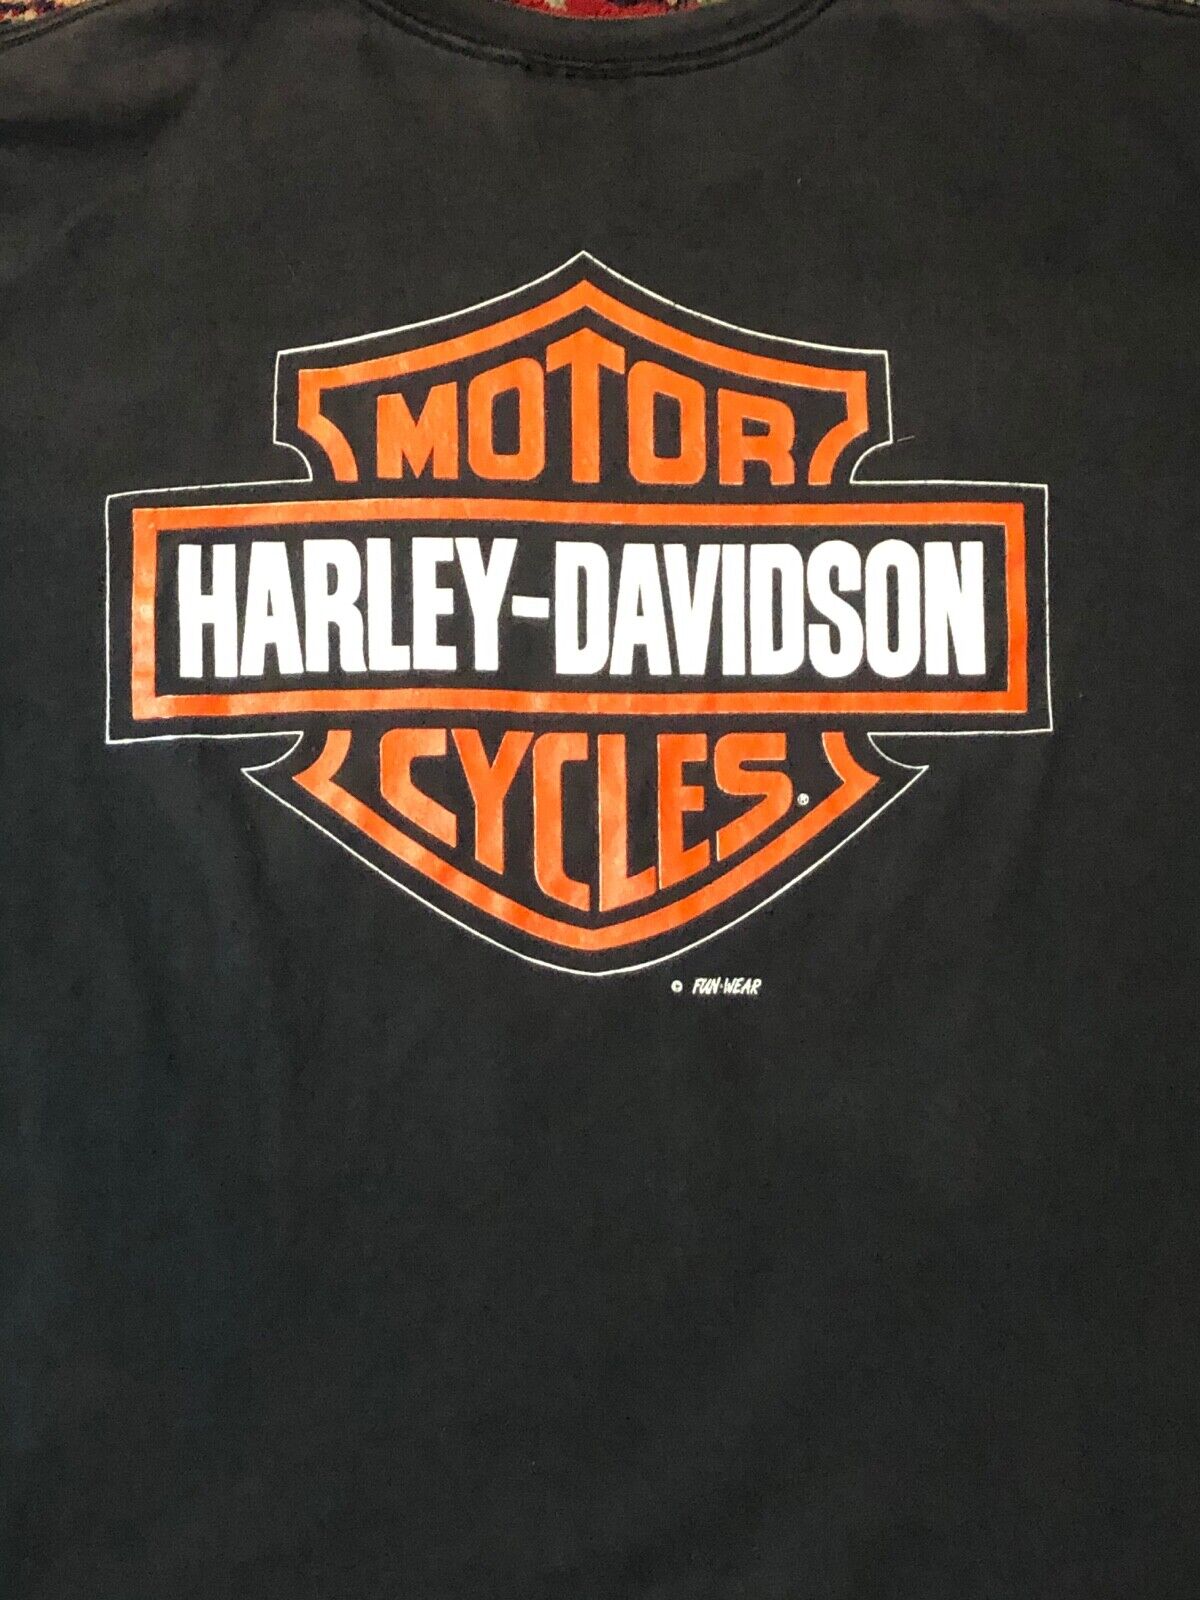 Vintage 90s Harley-Davidson Eagle T shirt size XL Bikes fun-wear 